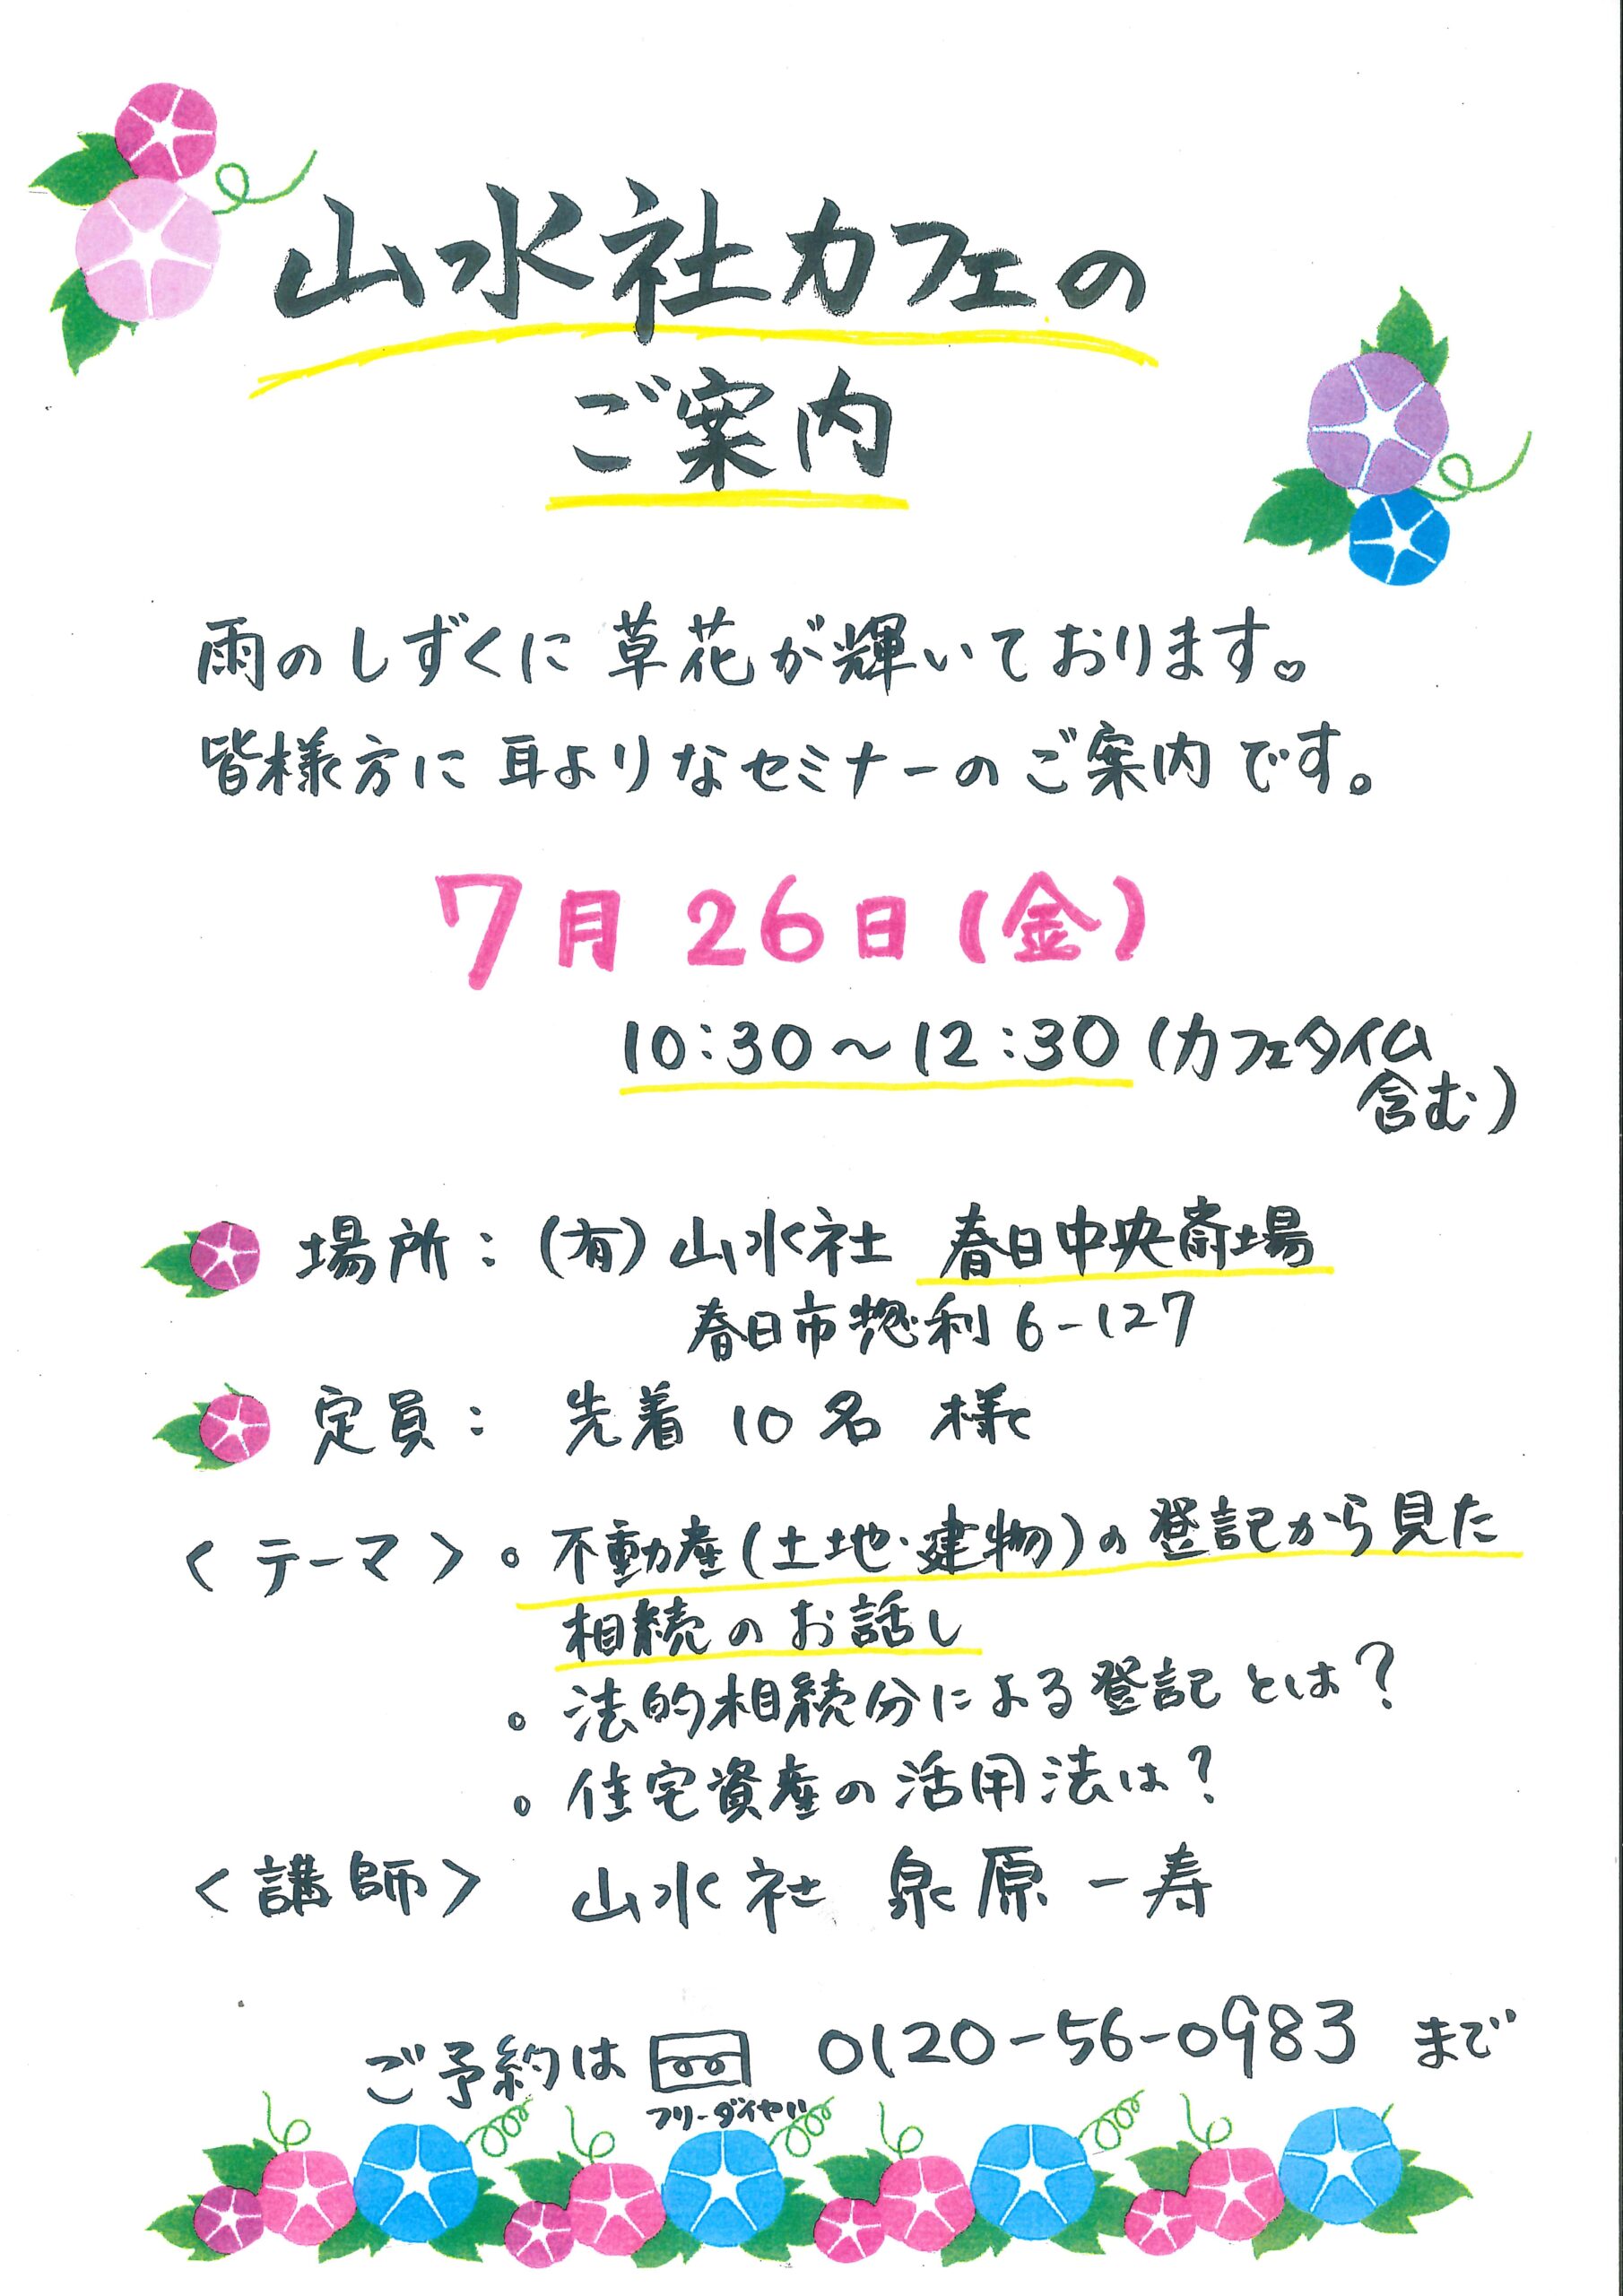 『山水社カフェ』７月26日(金)のお知らせ